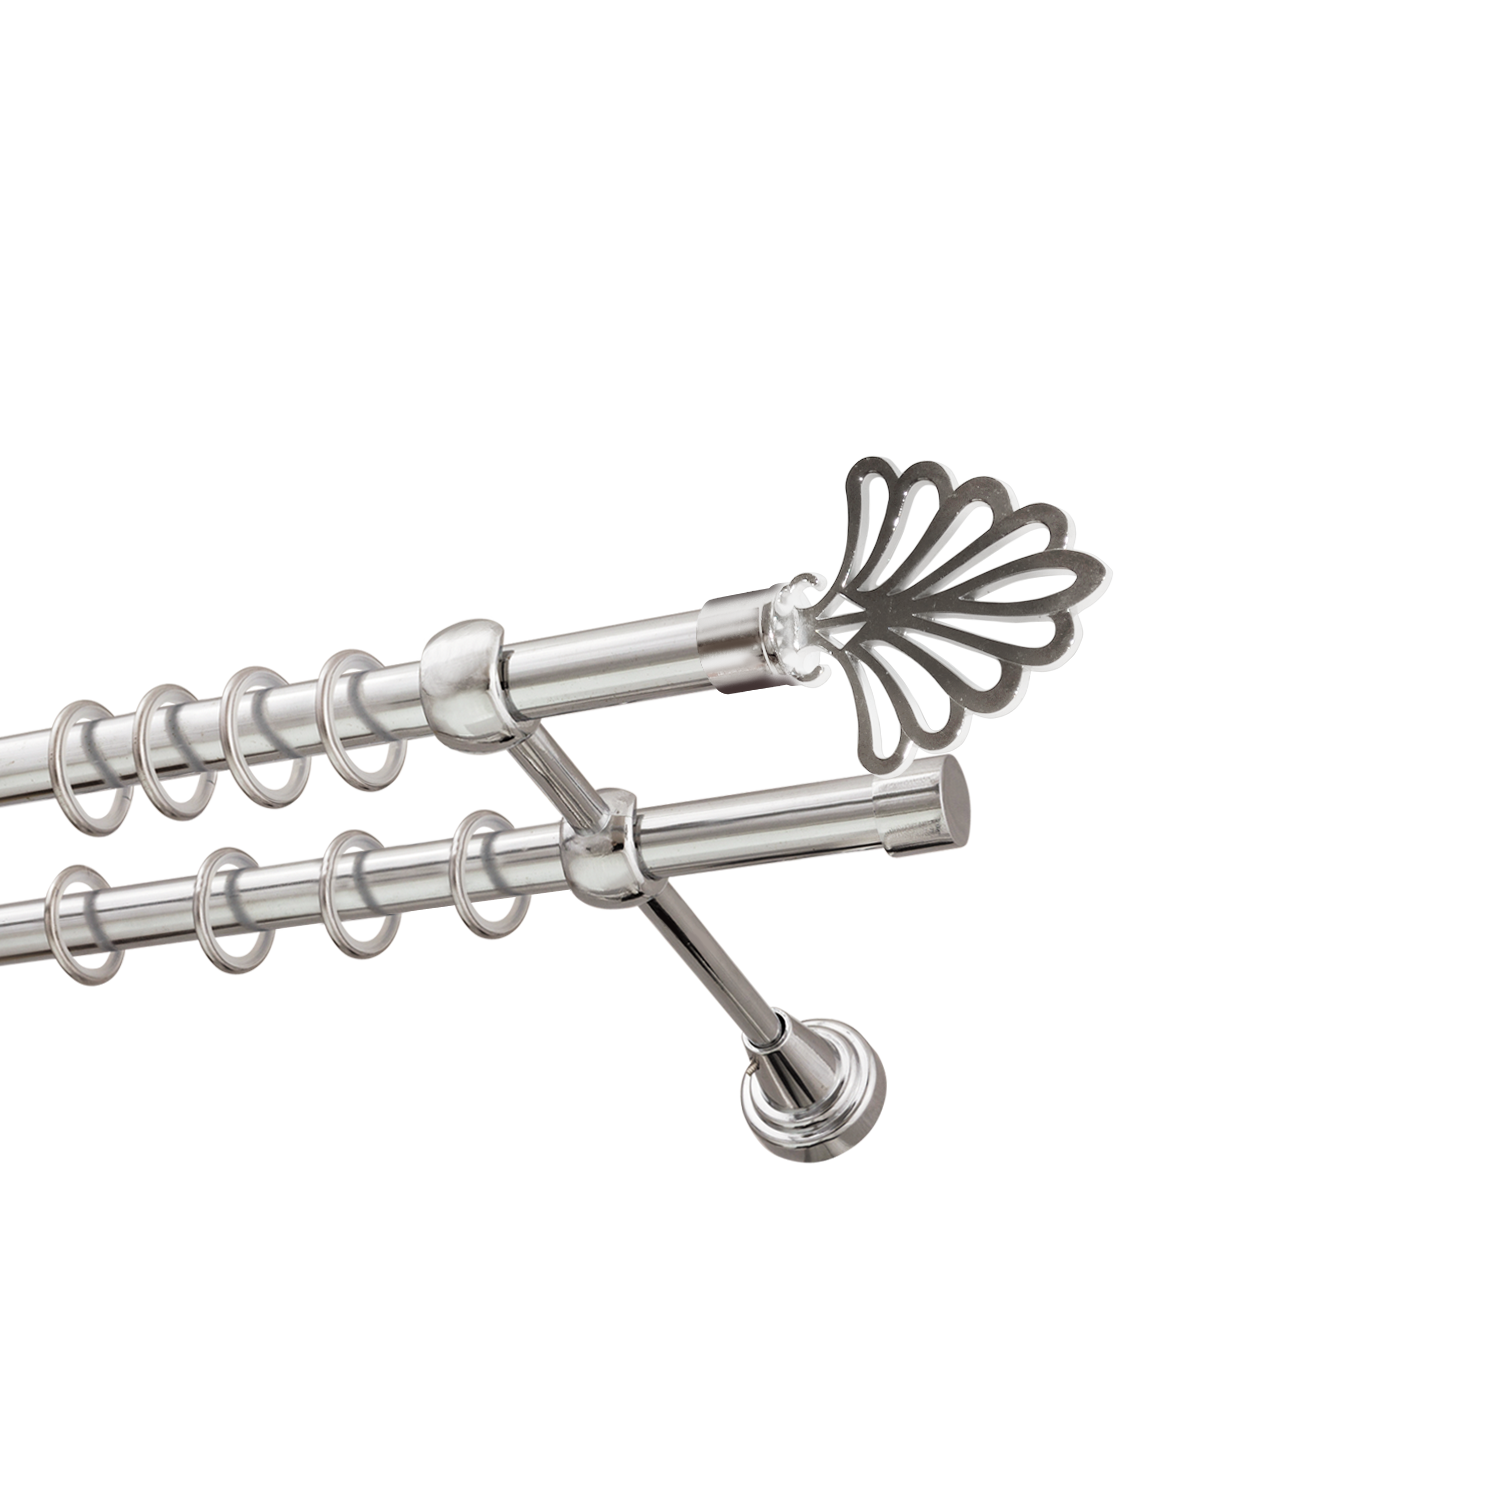 Металлический карниз для штор Бутик, двухрядный 16/16 мм, серебро, гладкая штанга, длина 160 см - фото Wikidecor.ru